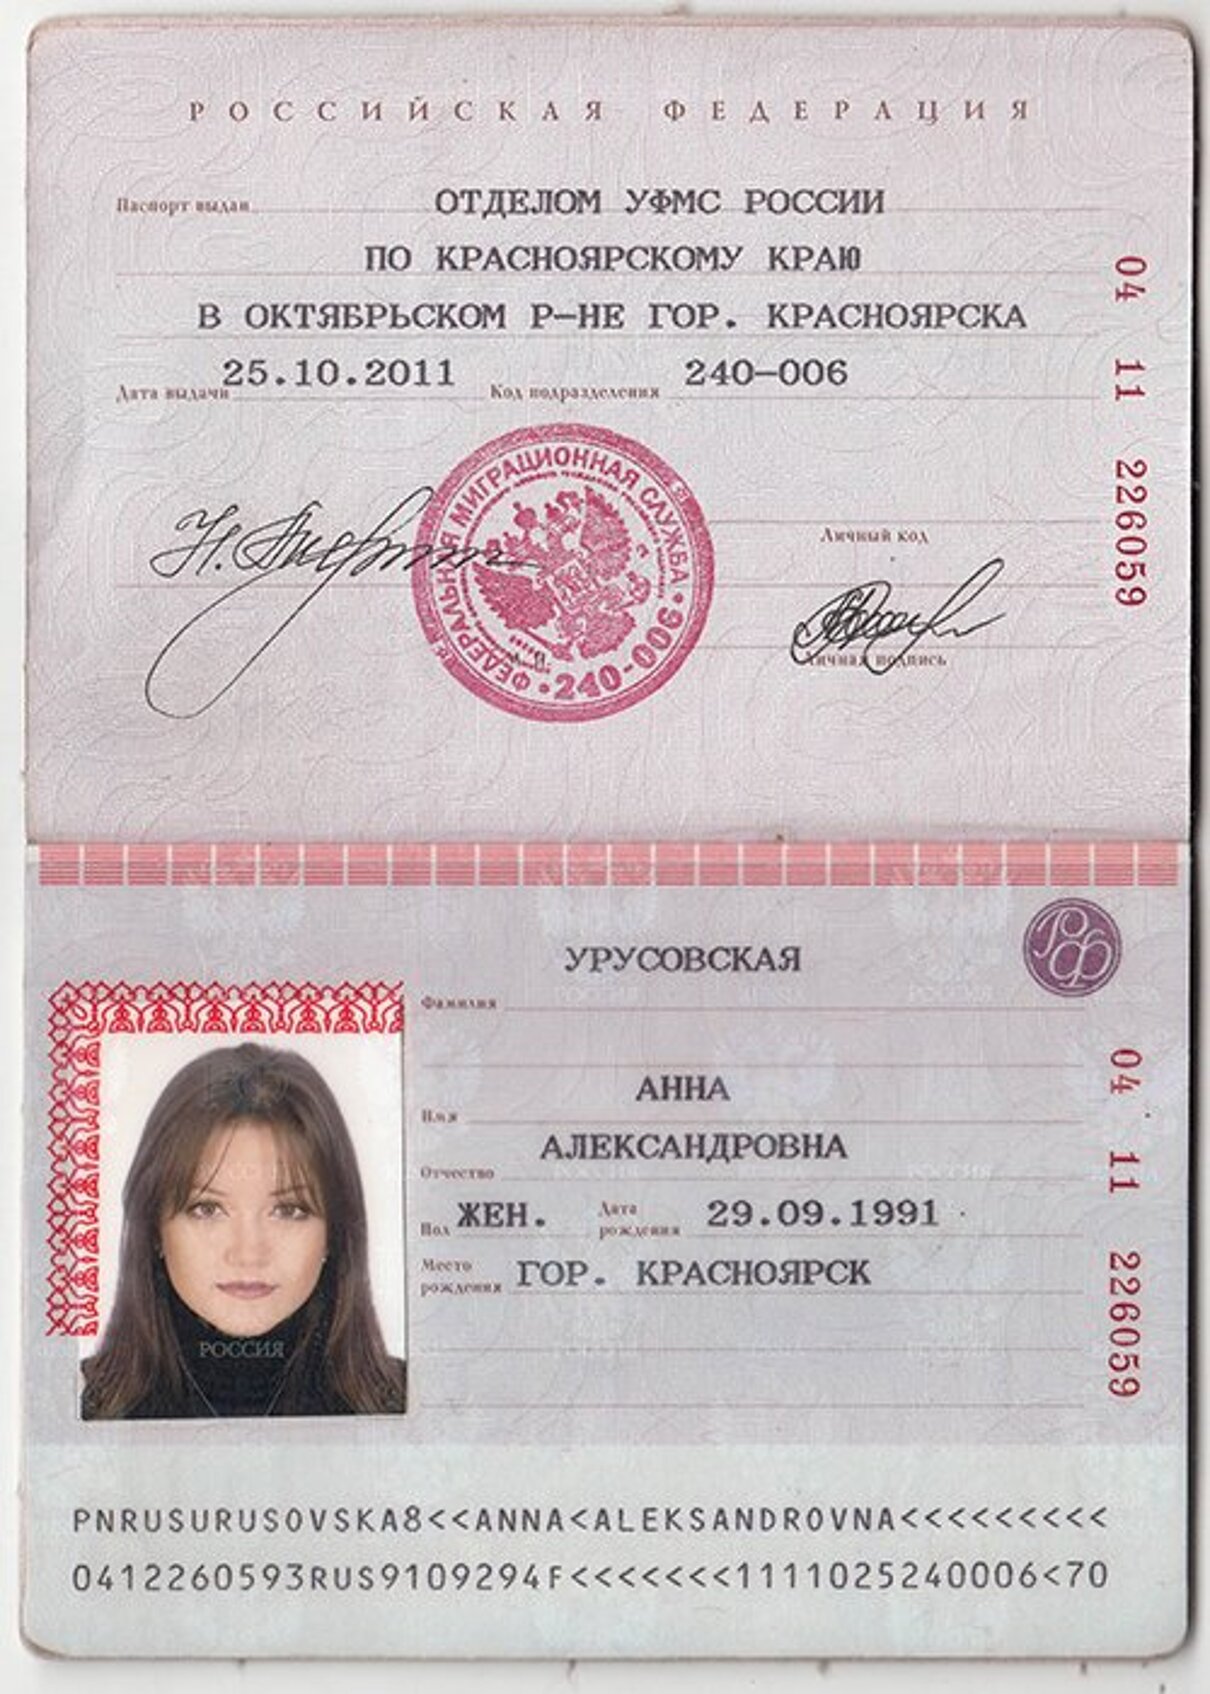 Как обработать фотографию для паспорта онлайн